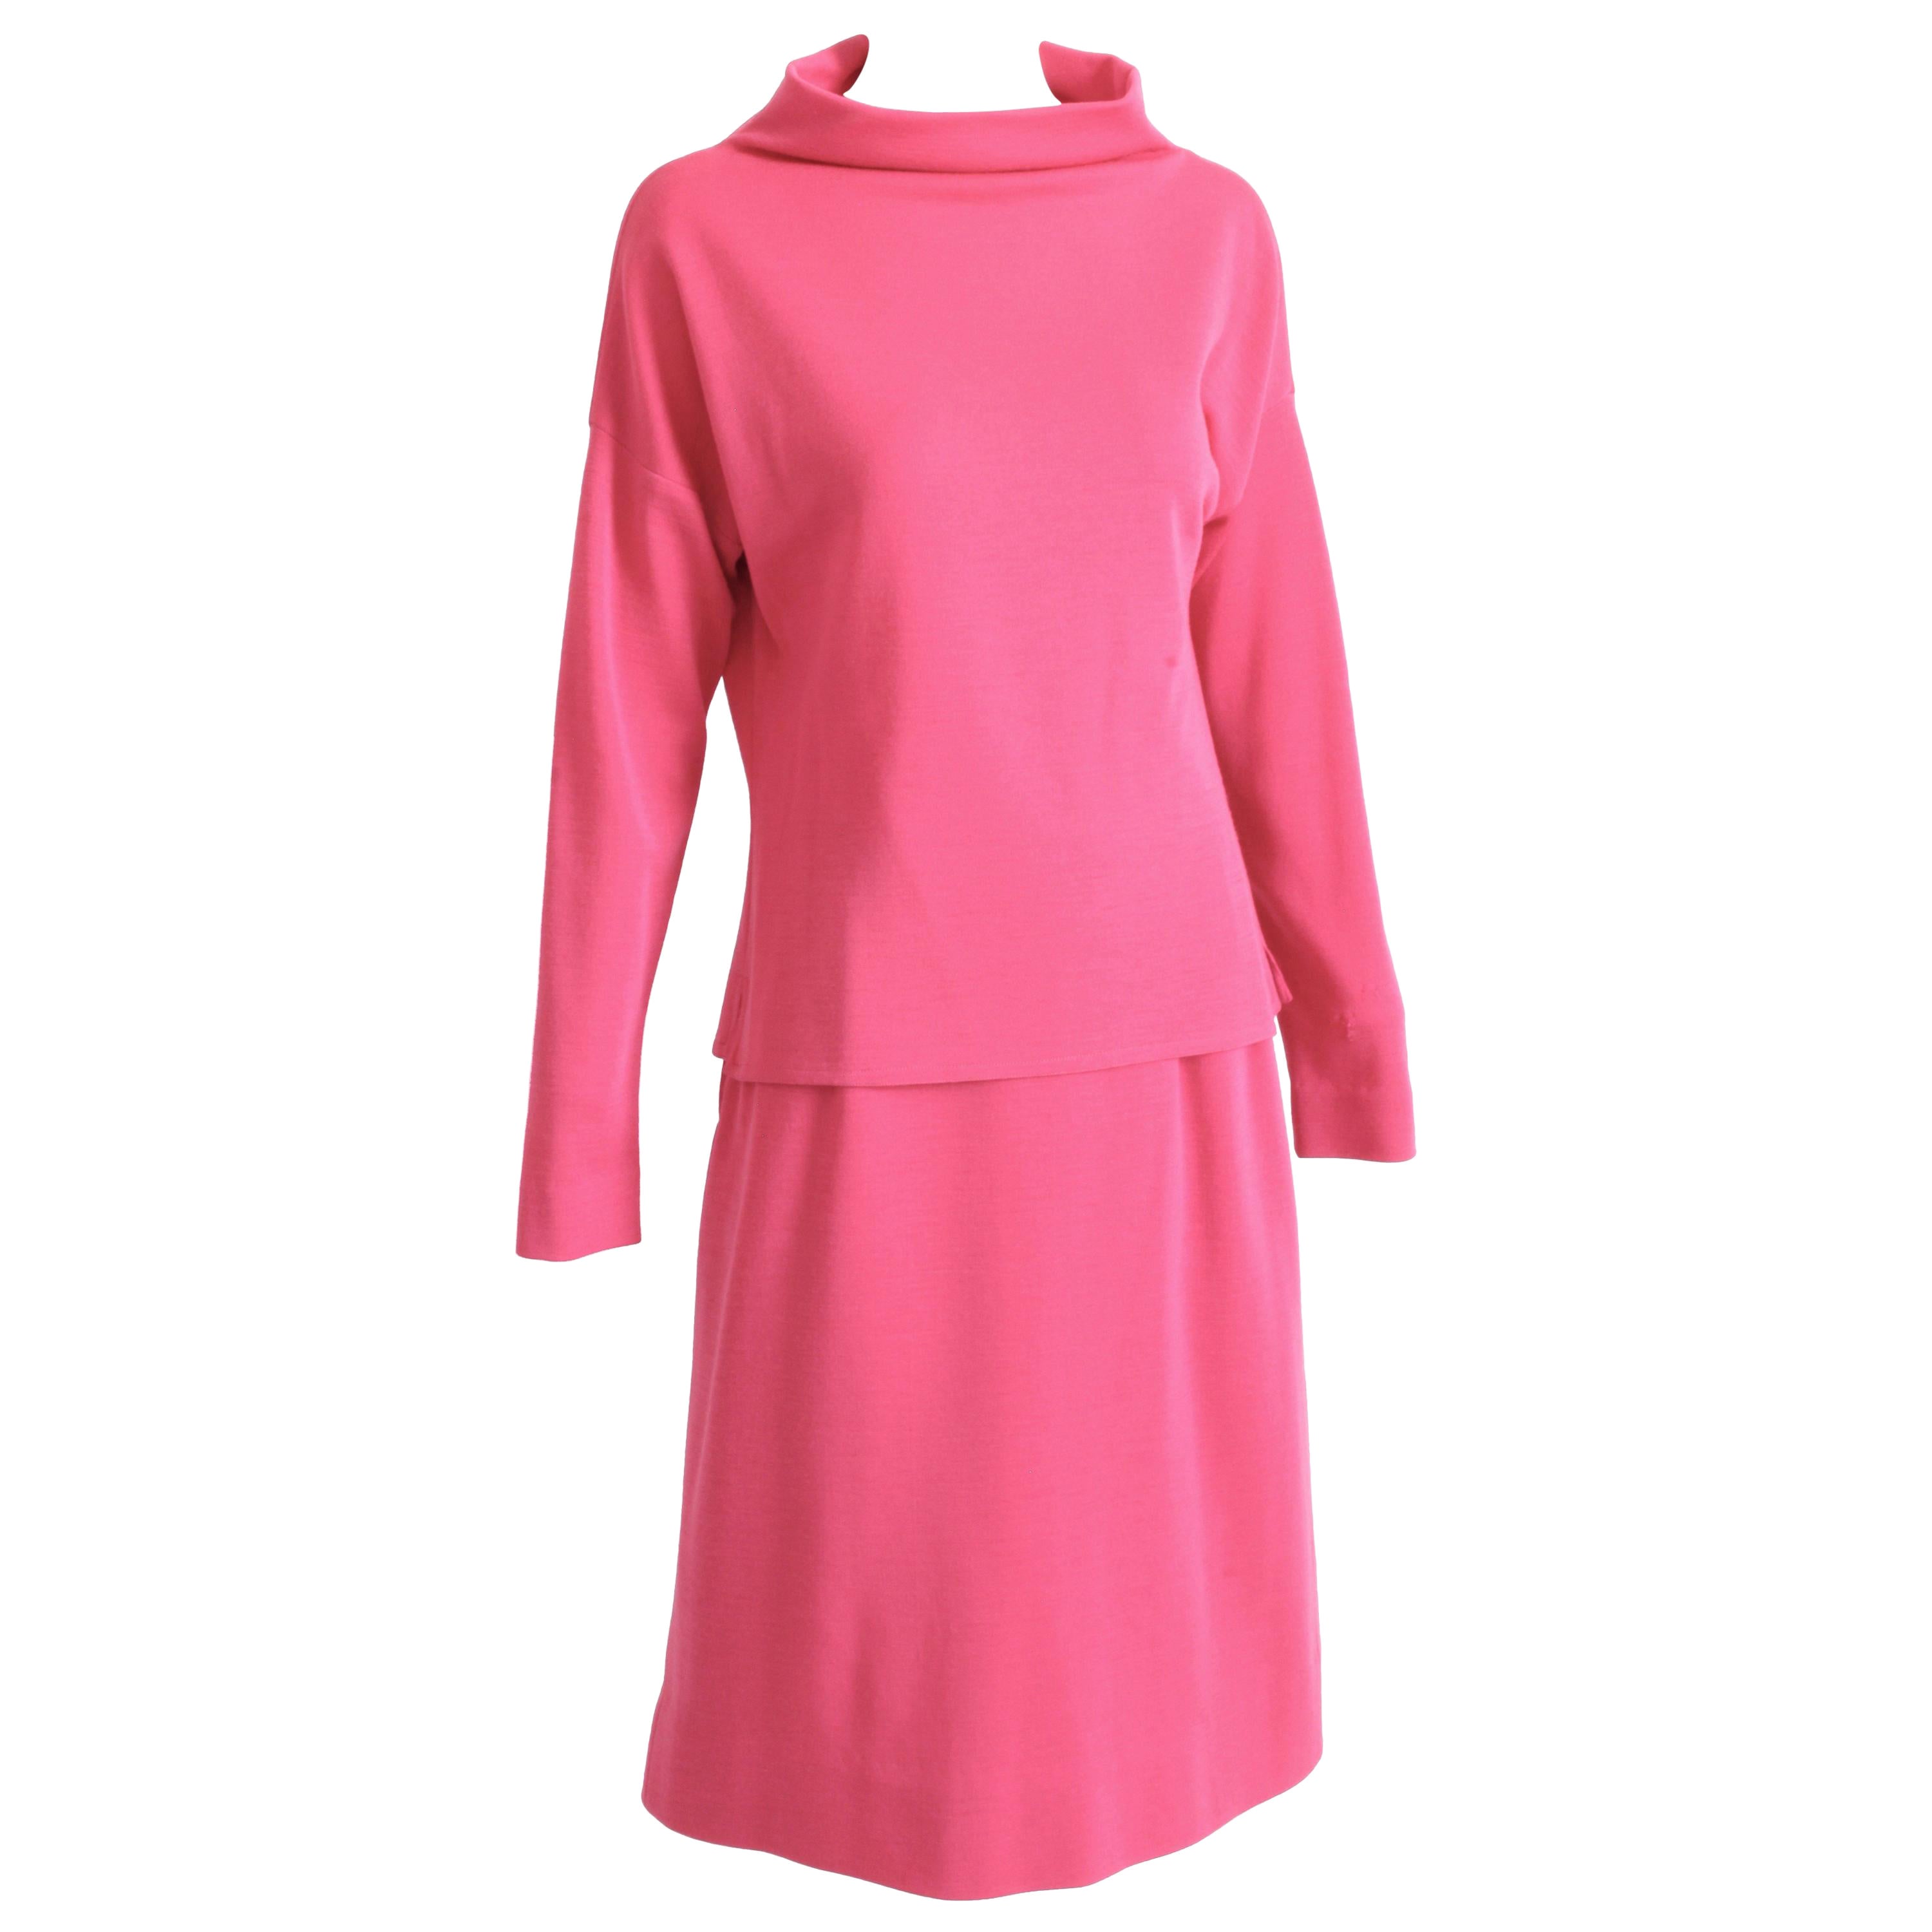 Bonnie Cashin Suit Pink Knit 2pc Set Raglan Top and Skirt Vintage 1960s